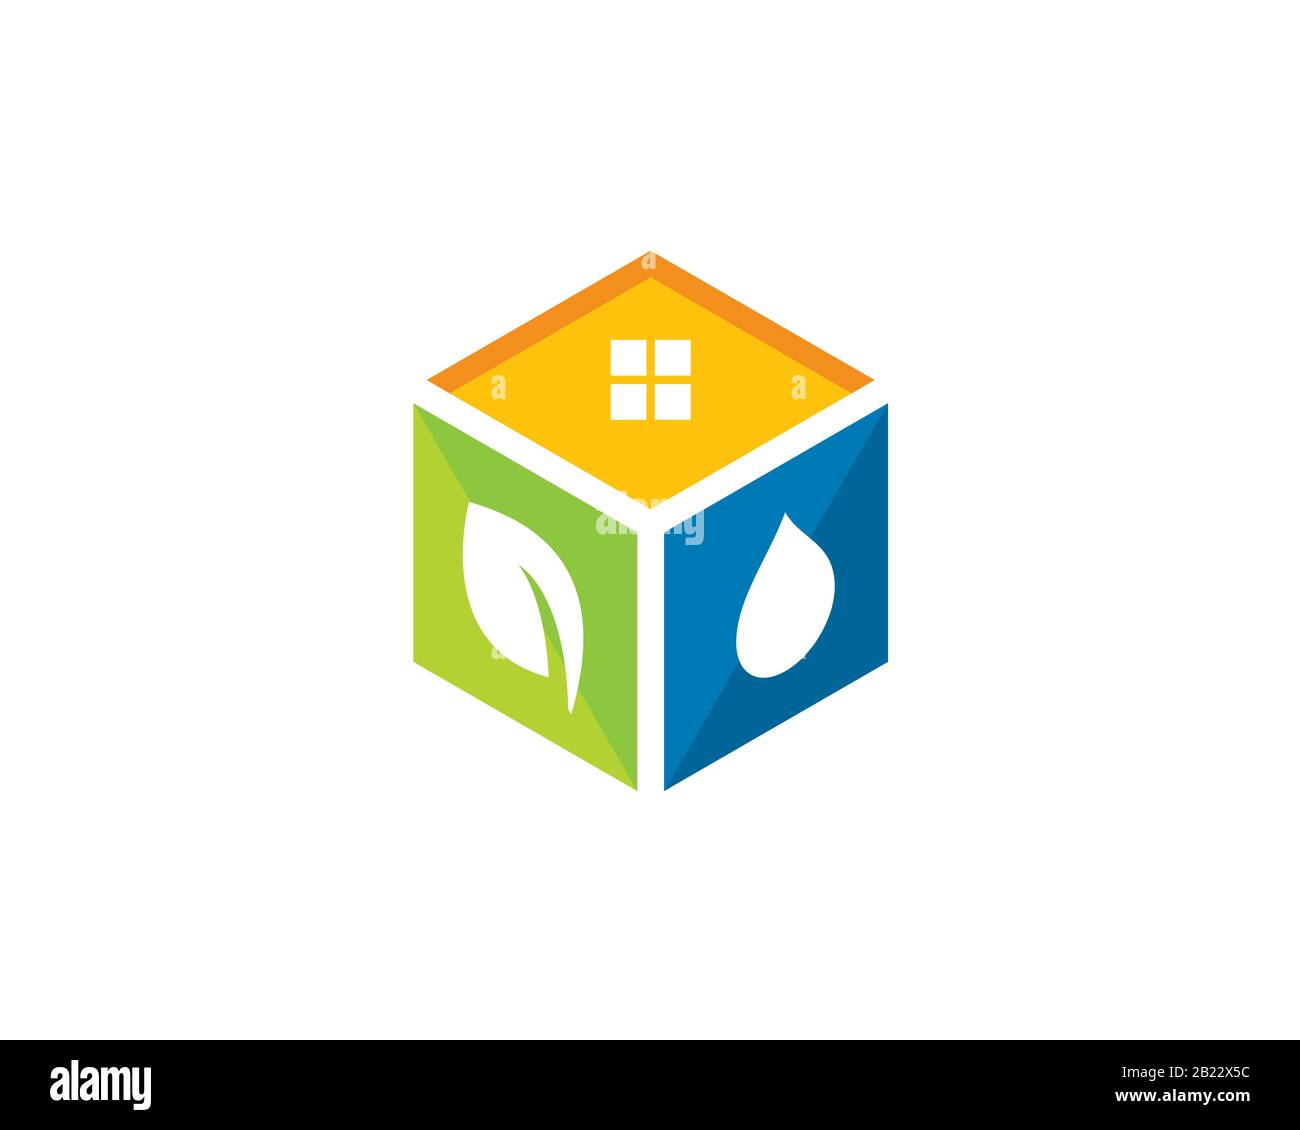 cube 3d coloré en tant que composition de 3 parallélogramme avec différentes icônes et signification : fenêtre, feuille et goutte d'eau Illustration de Vecteur